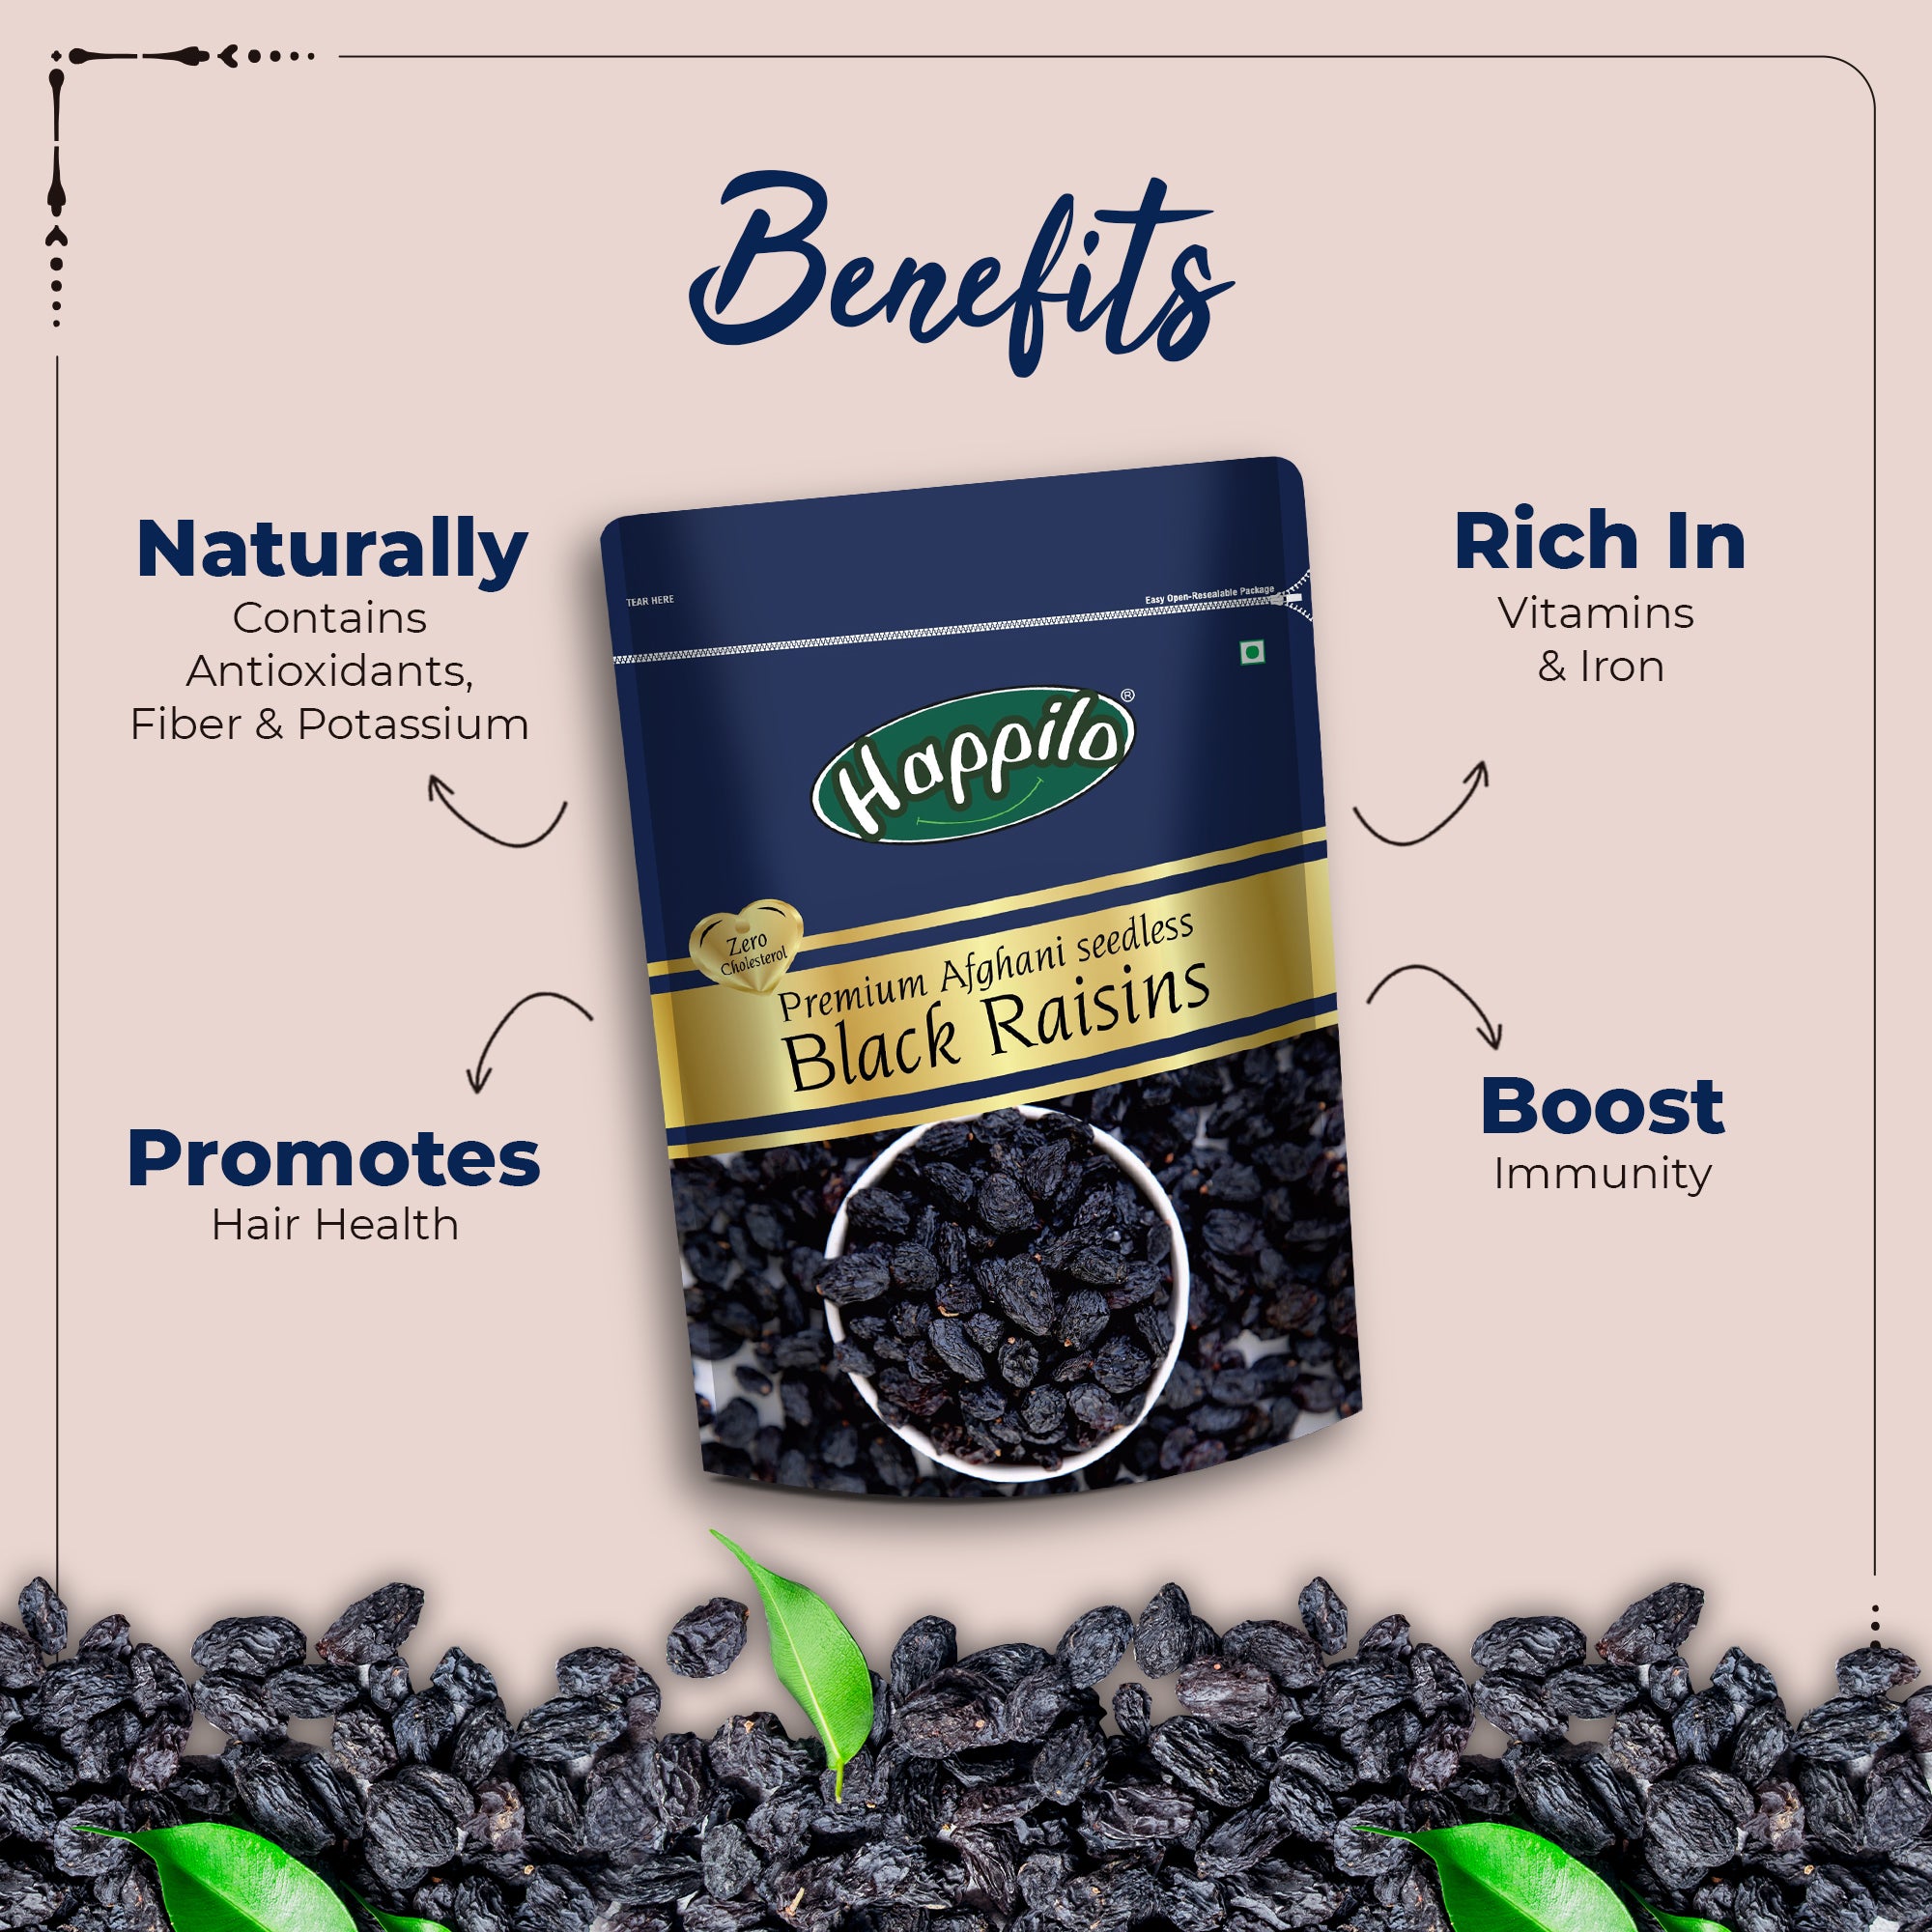 Happilo Premium Seedless Afghani Black Raisins